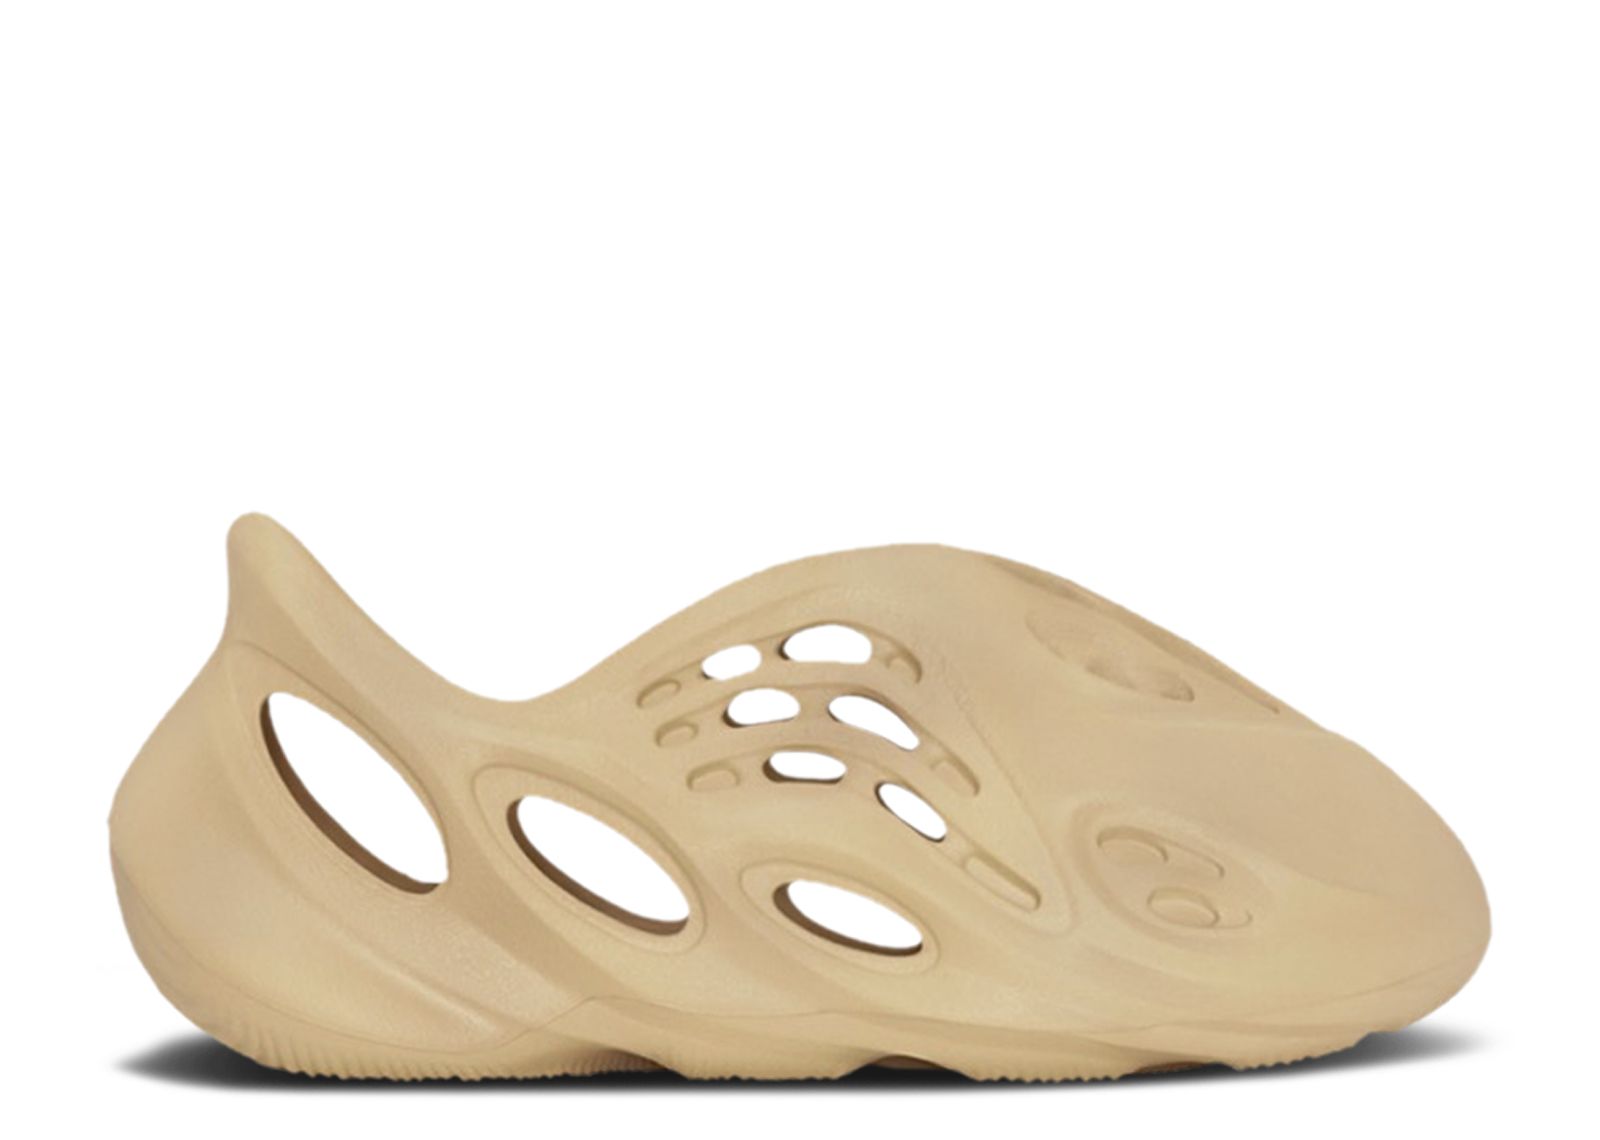 Кроссовки adidas Yeezy Foam Runner Kids 'Desert Sand', коричневый цена и фото